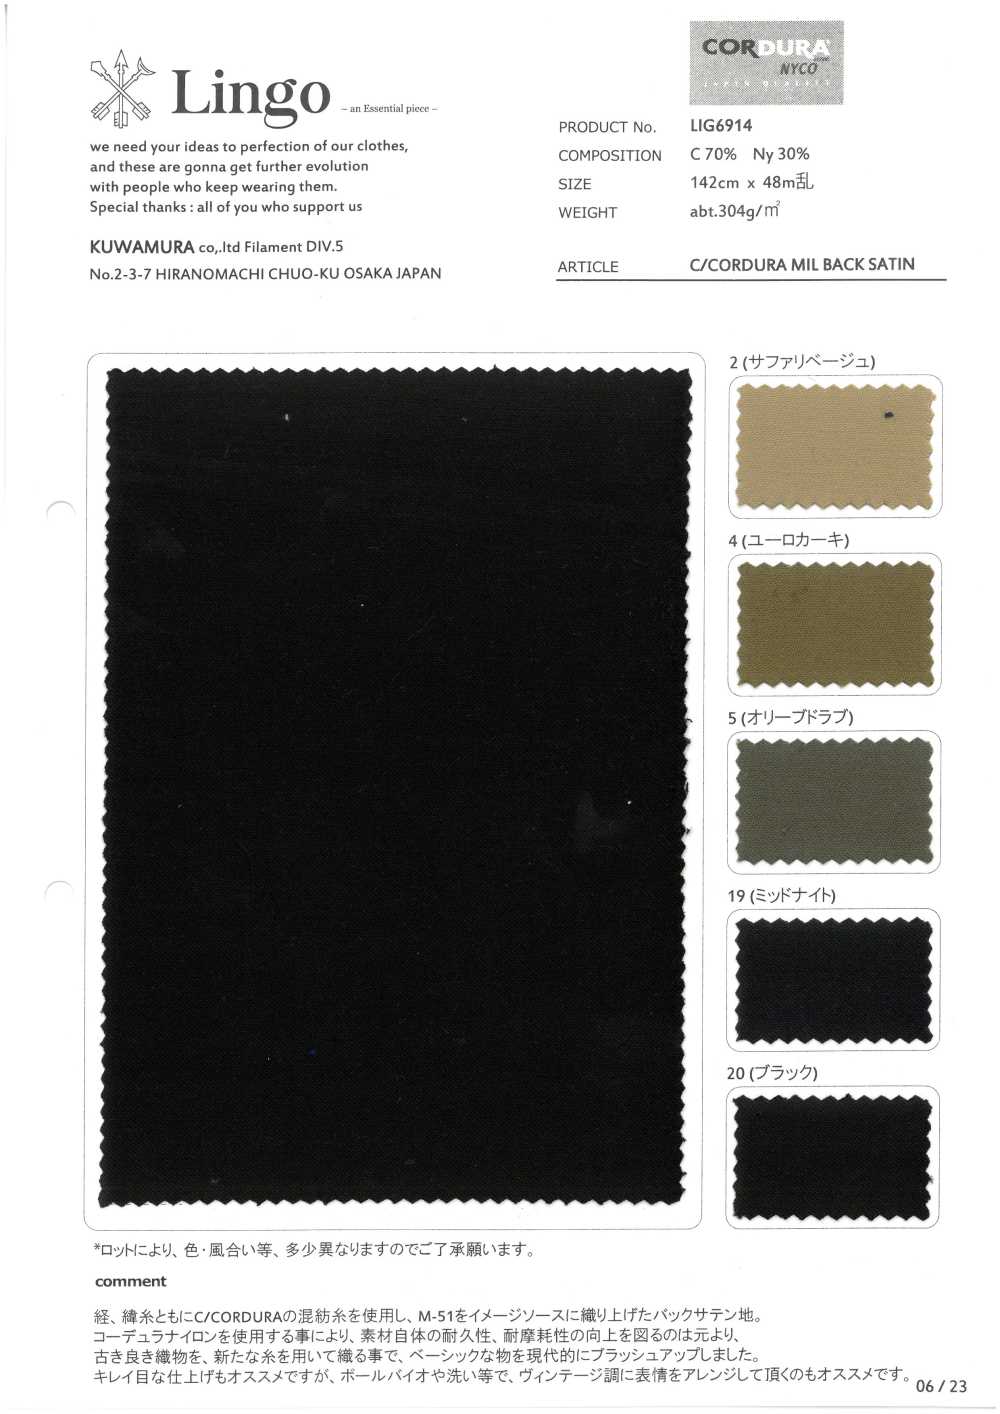 LIG6914 C/CORDURA MIL VOLTAS CETIM[Têxtil / Tecido] Lingo (Têxtil Kuwamura)